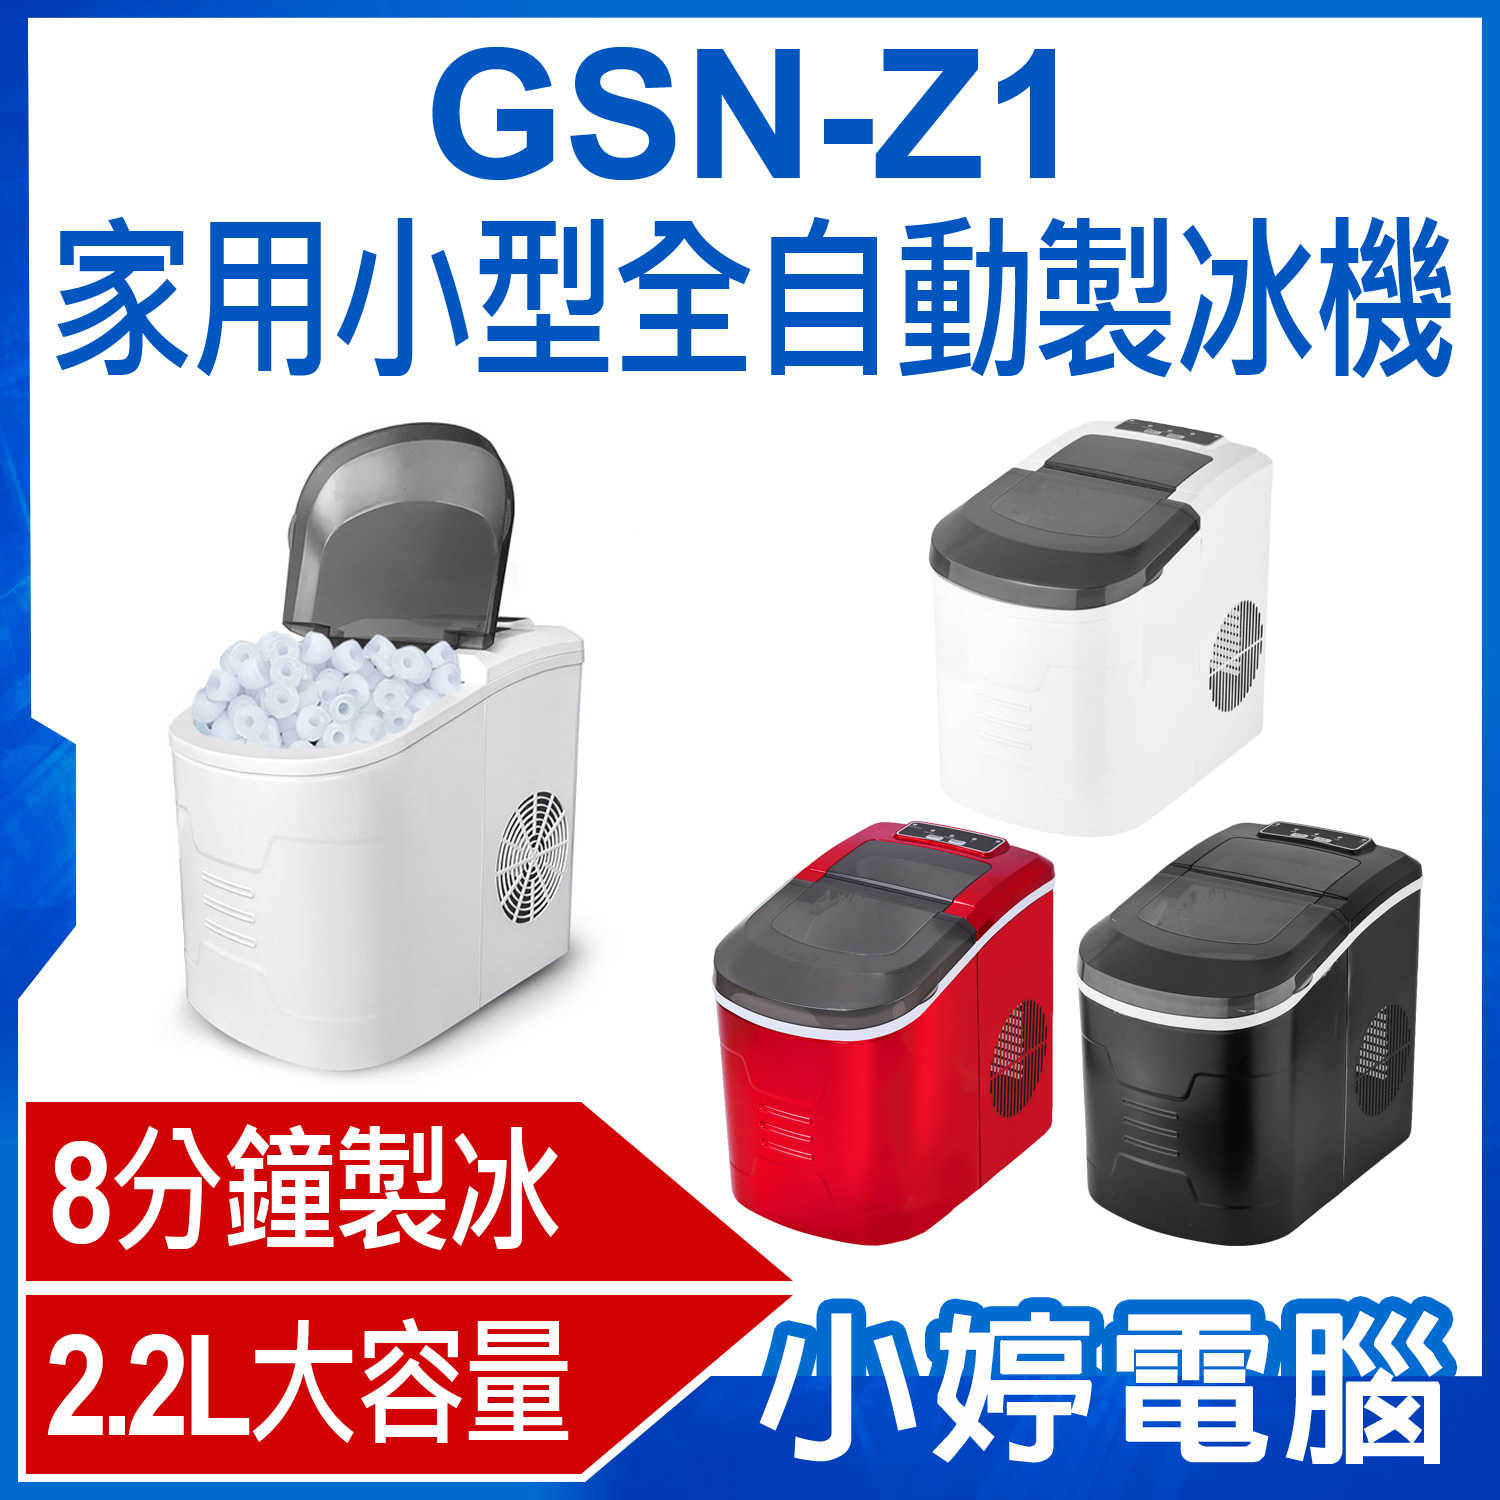 【小婷電腦】GSN-Z1 家用小型全自動製冰機 8分鐘急速製冰 2.2L大容量水箱 12KG儲冰量